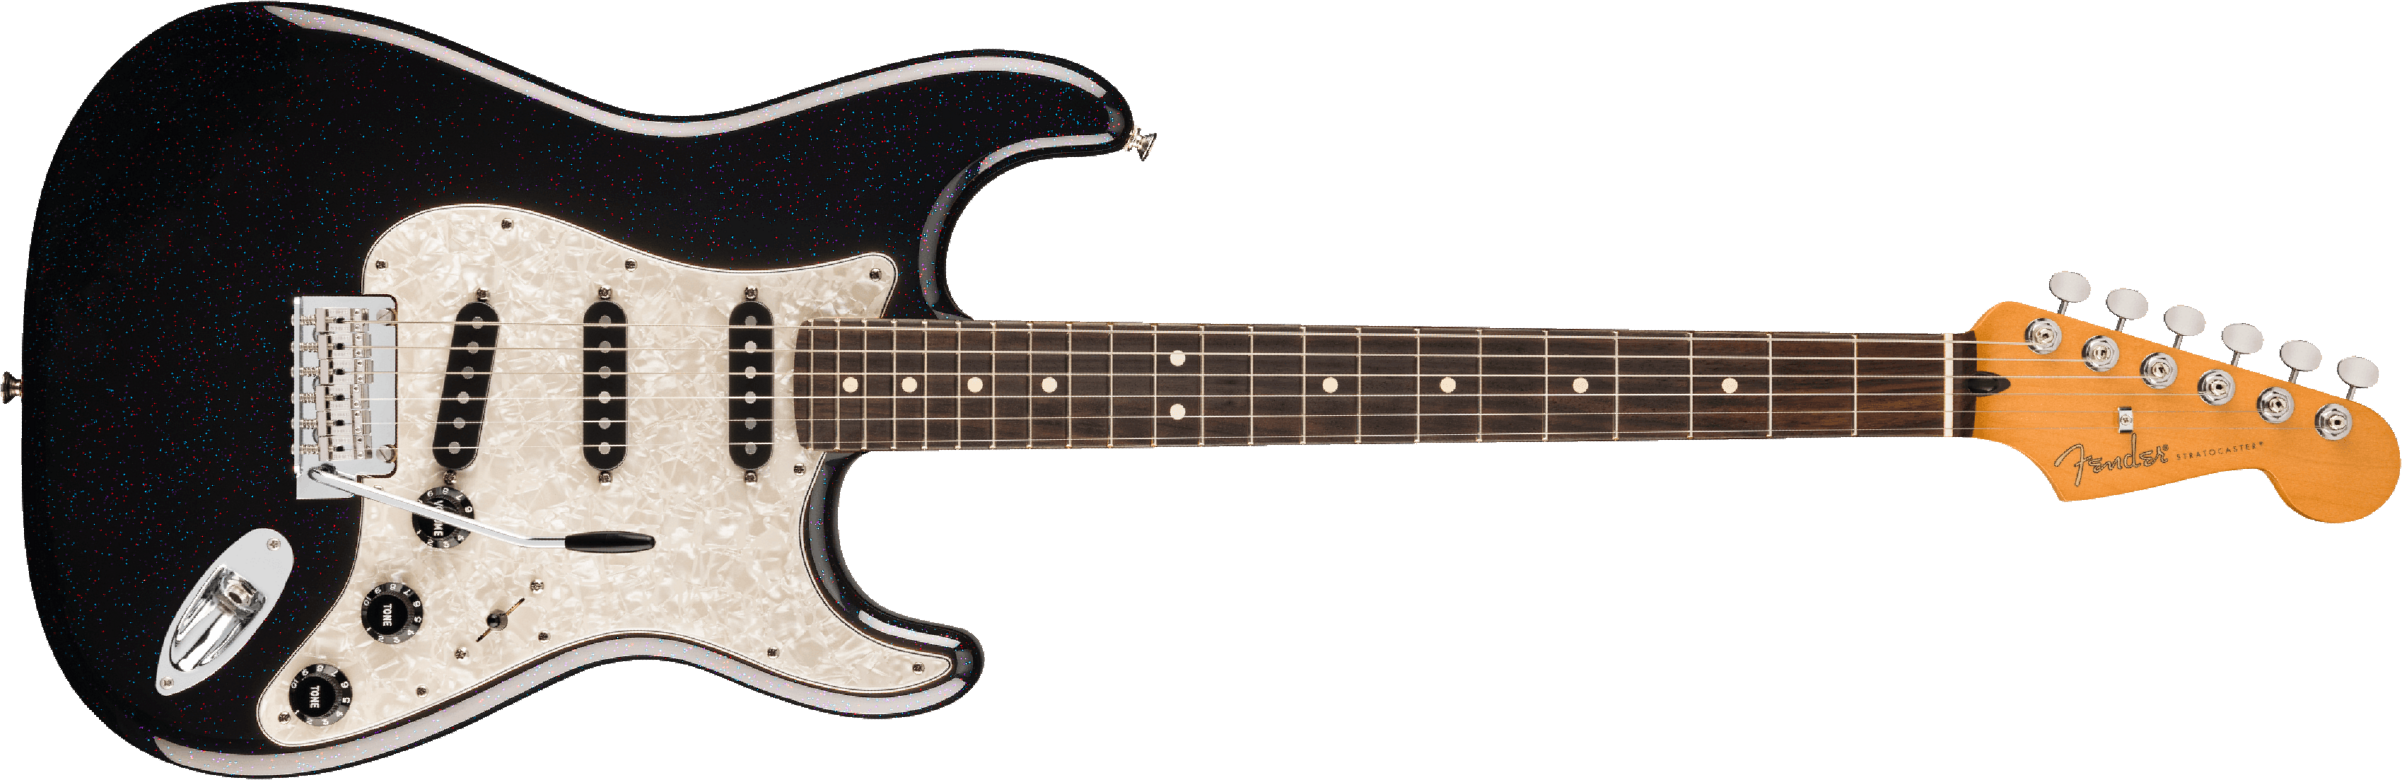 Fender Stratocaster Player 70th Anniversary 3s Trem Rw - Nebula Noir - Elektrische gitaar in Str-vorm - Main picture